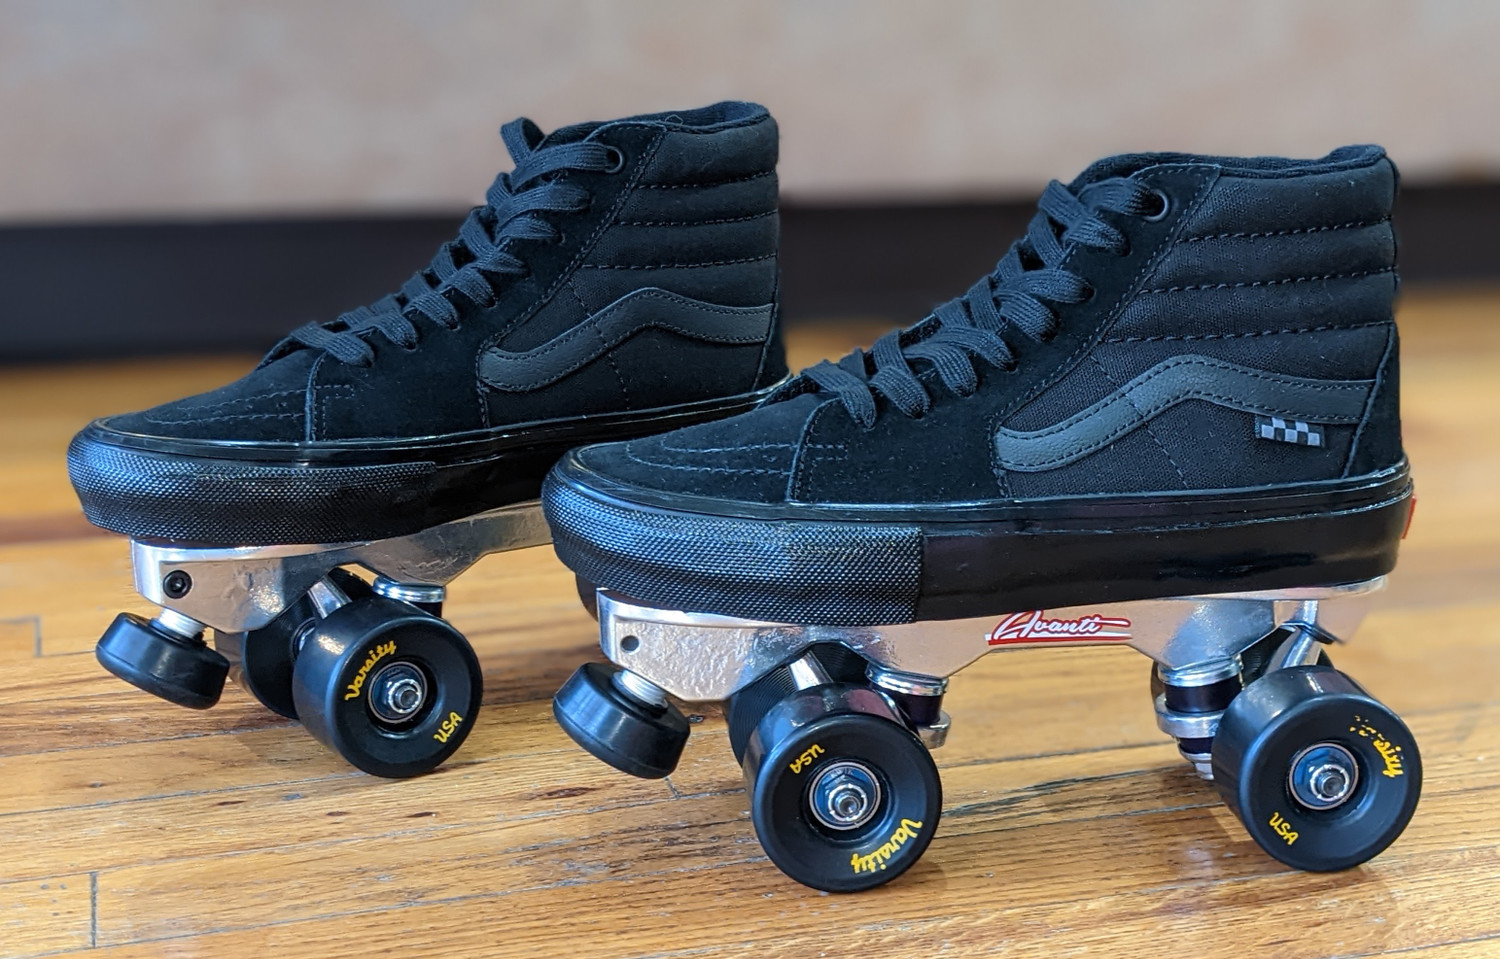 Vans custom Roller Skates - Sk8 - Hi Pro Black out made with Vans shoes